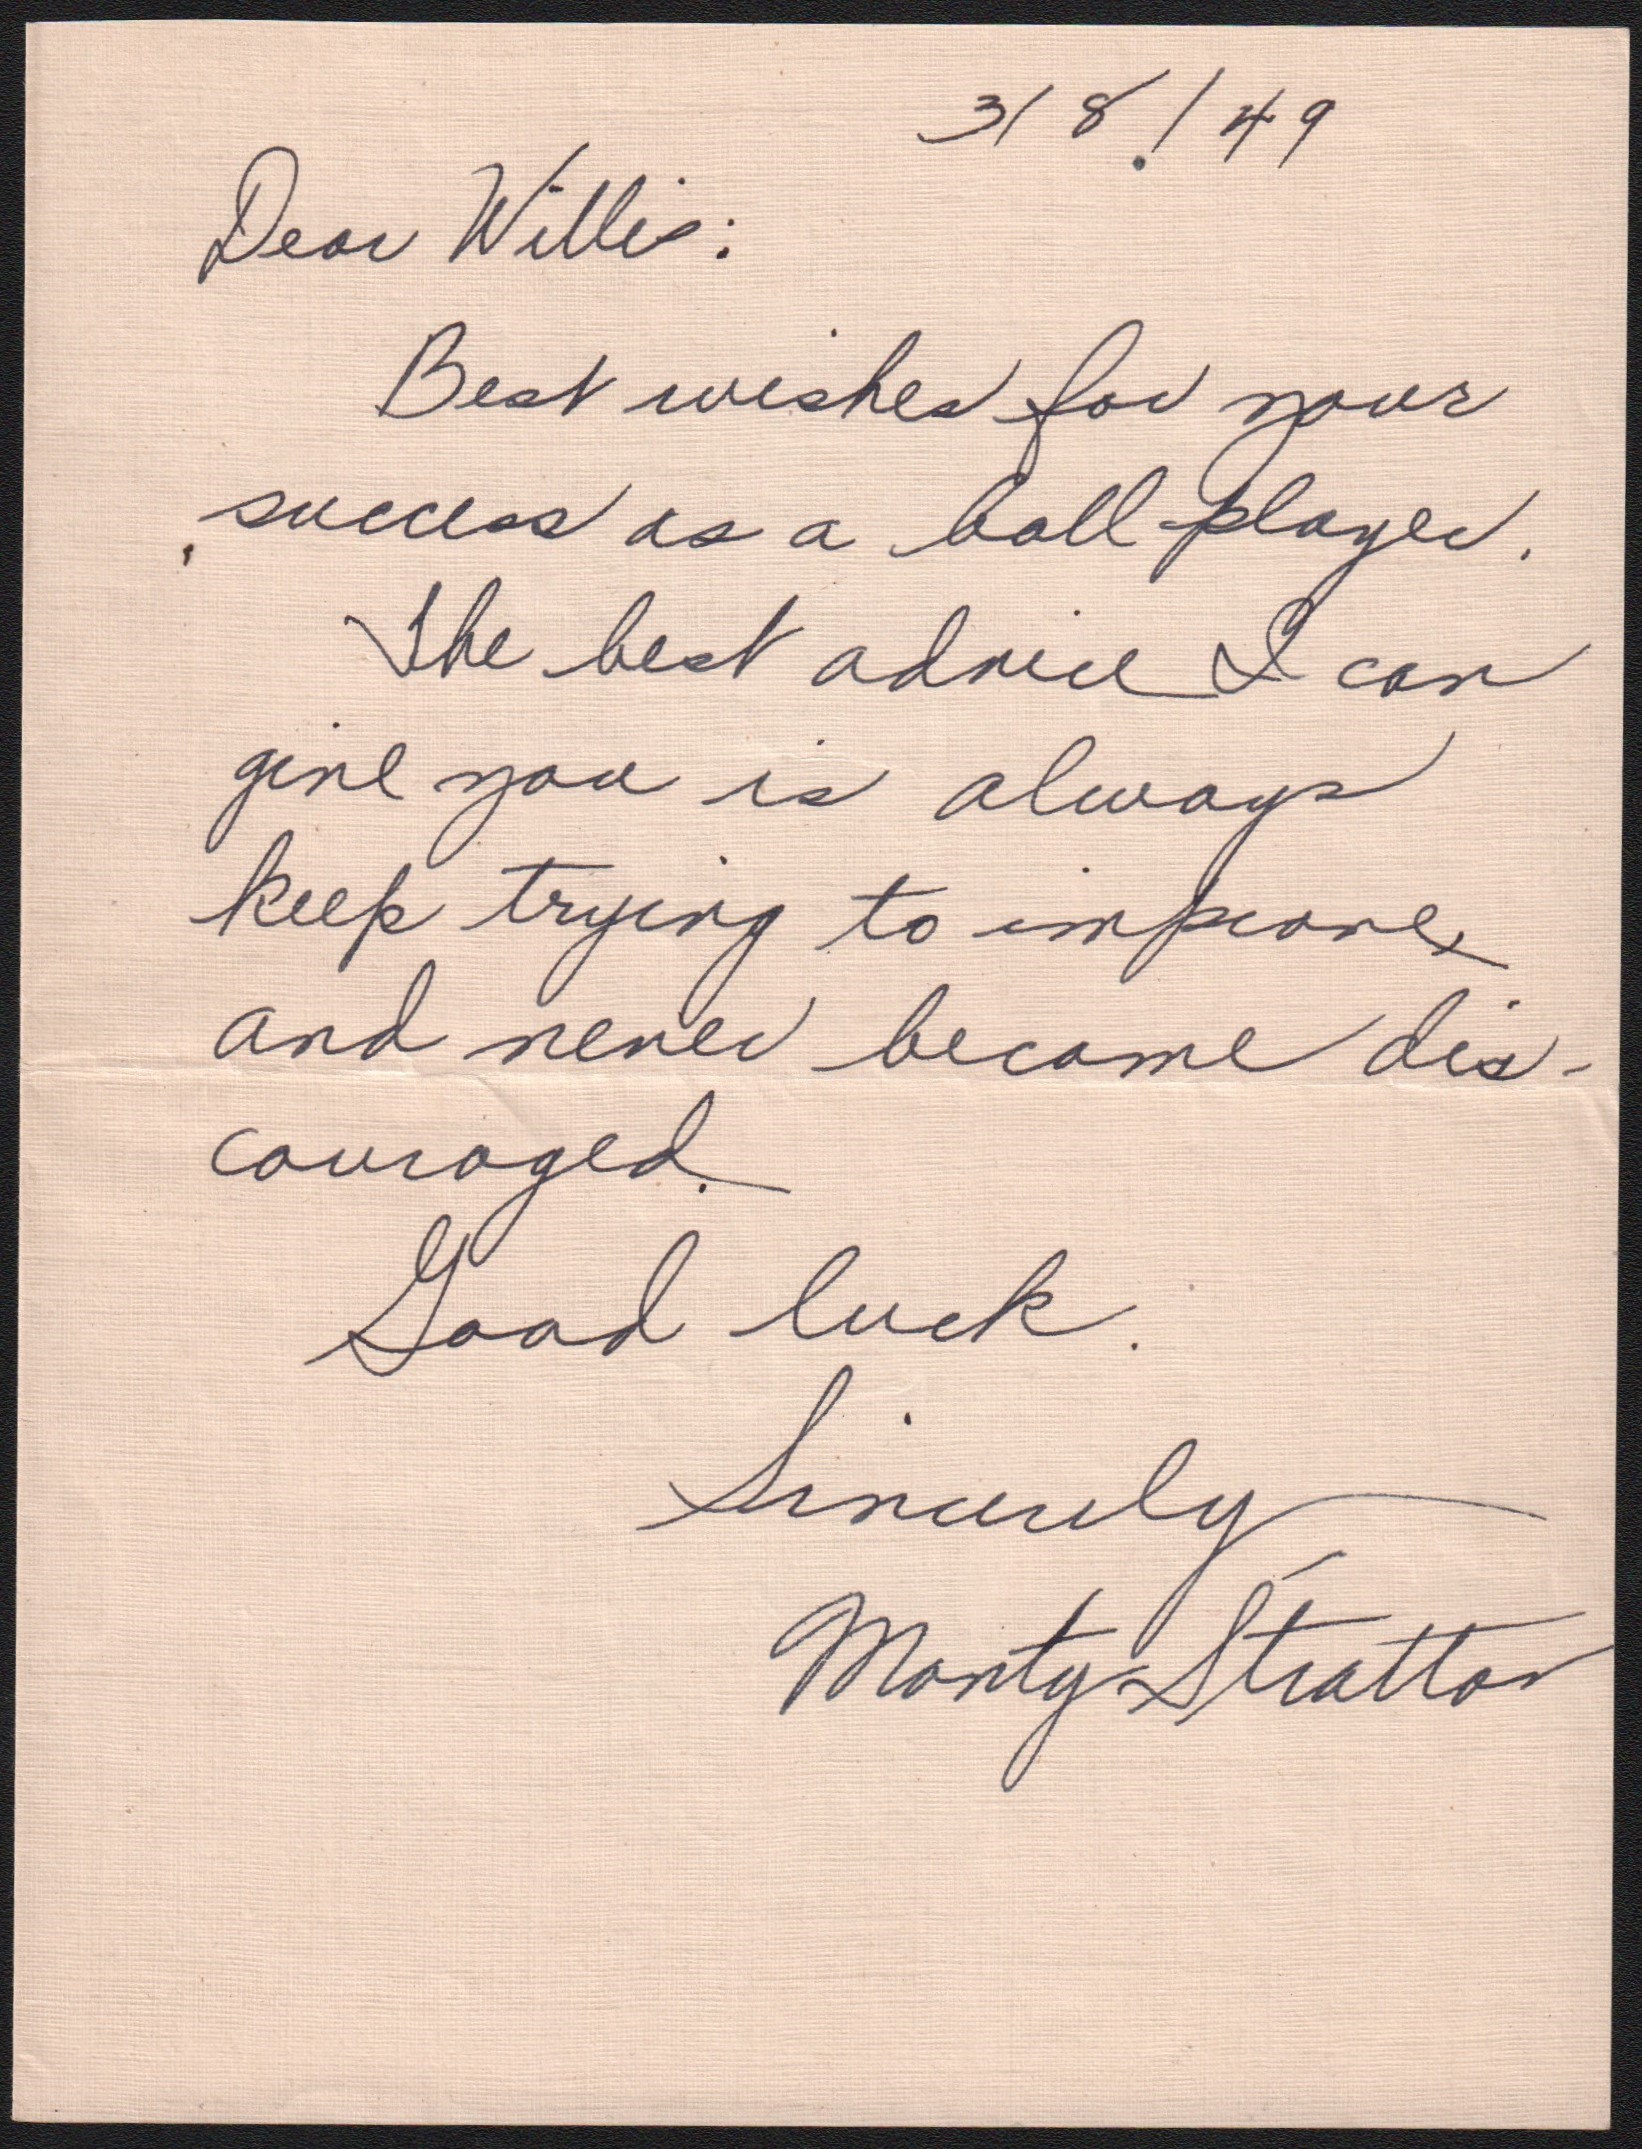 Monty Stratton Handwritten "Advice" Letter